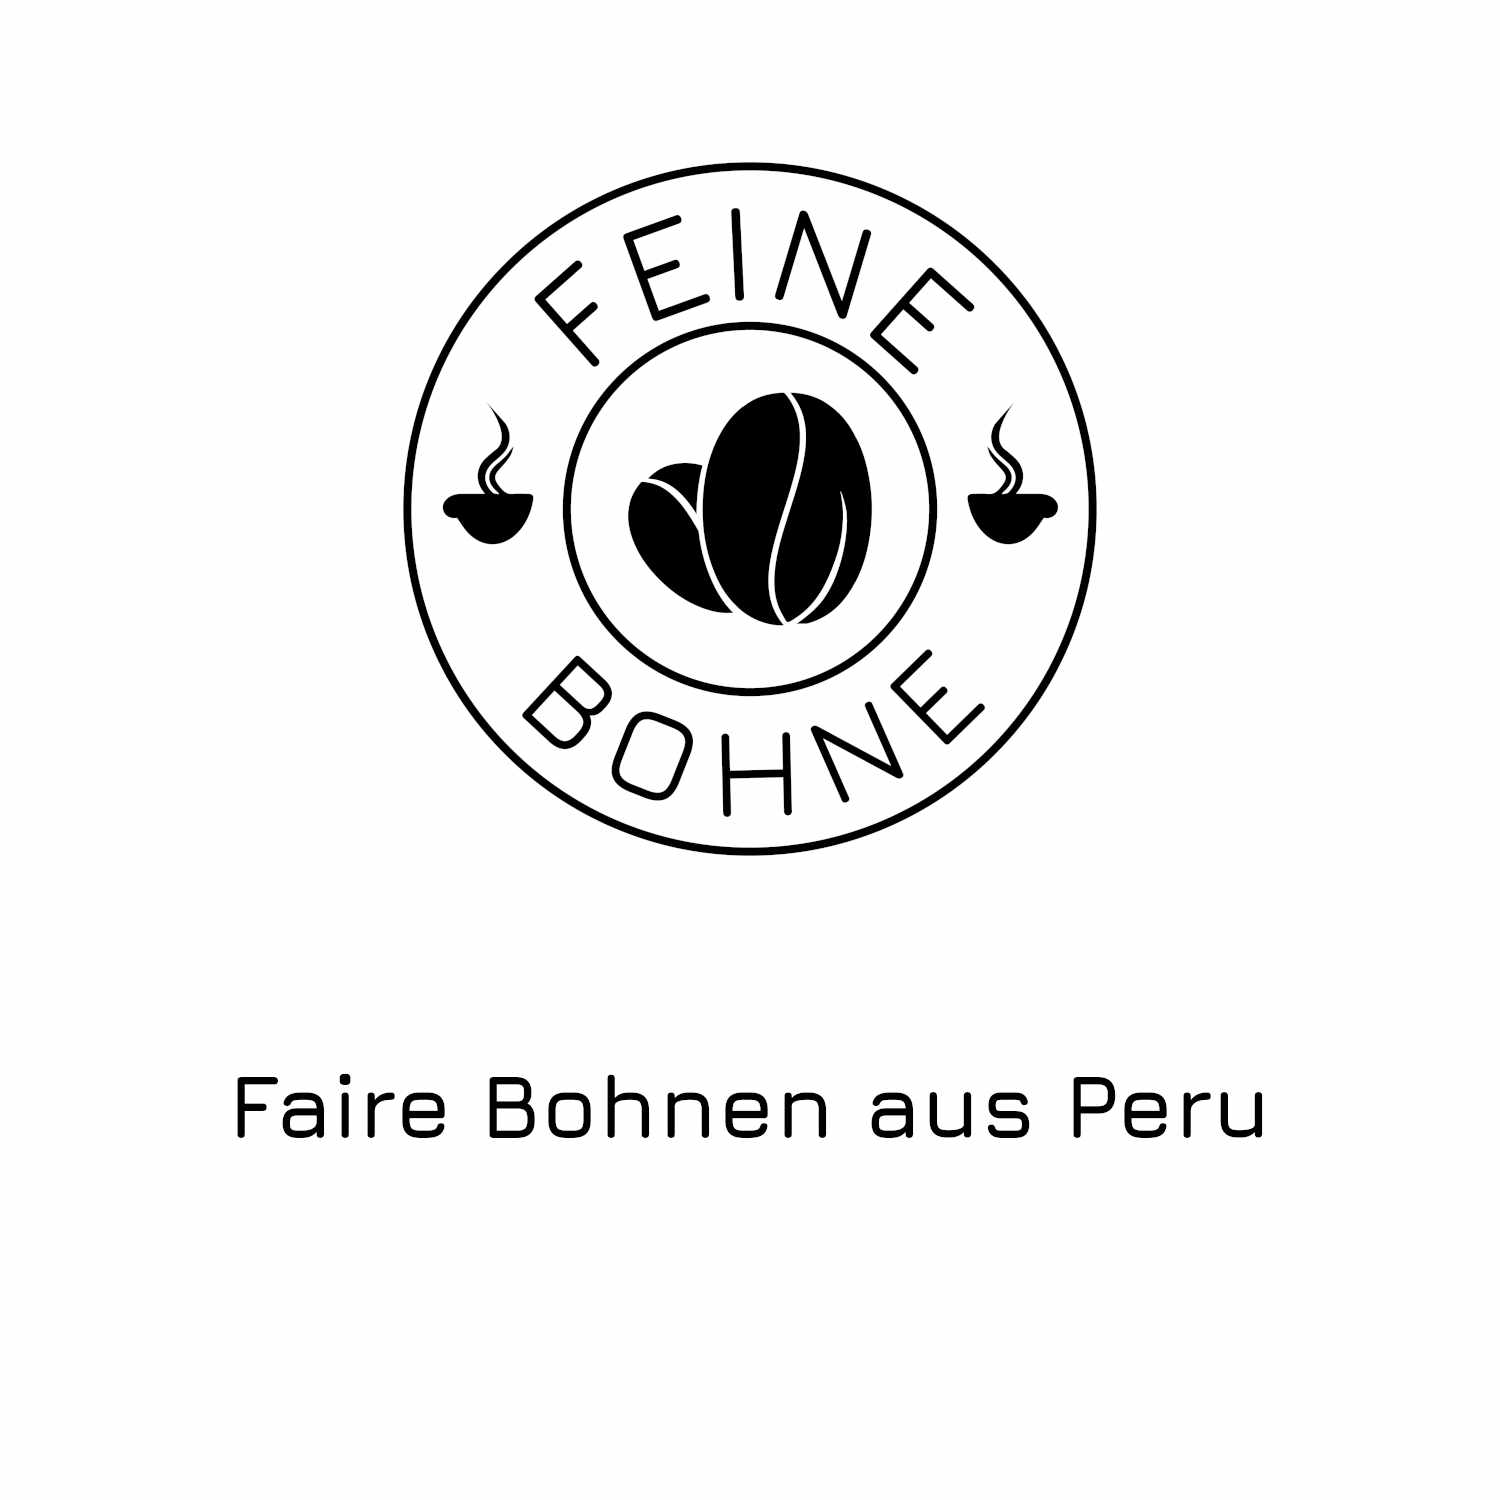 #33 Faire Bohnen aus Peru - Ellena und Juan von FairBeans